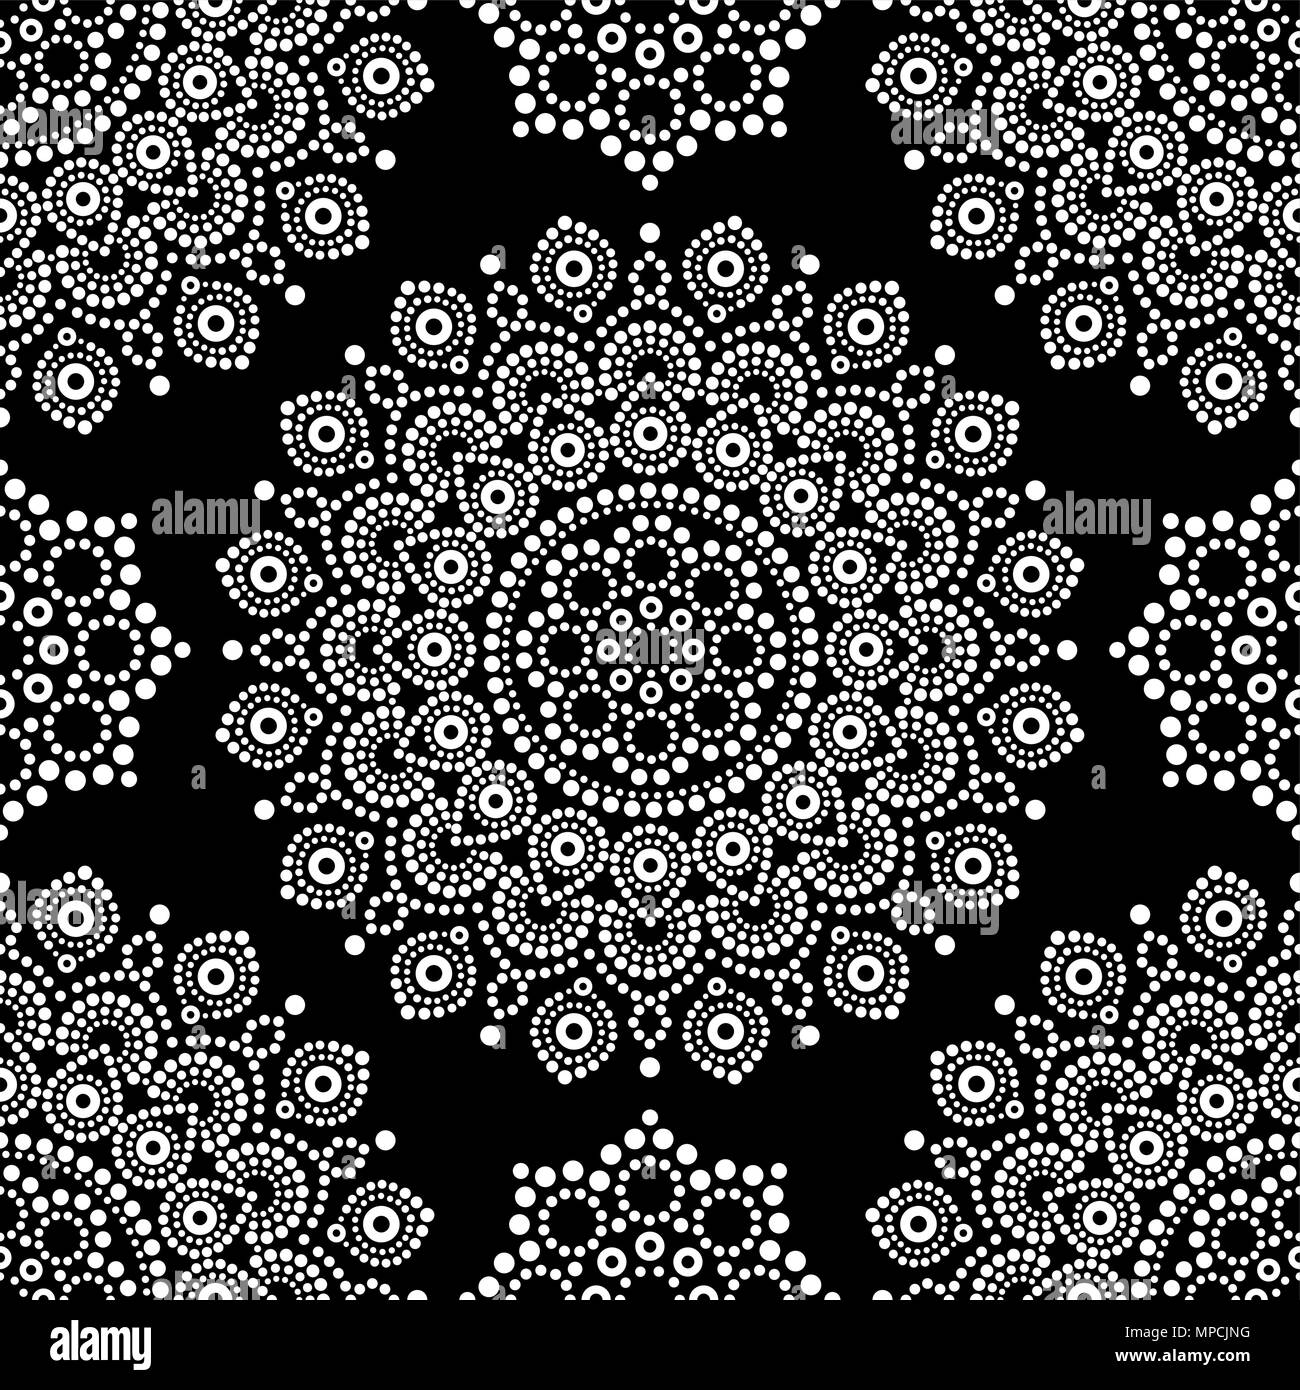 Dot painting monochromen Vector nahtlose Muster mit Mandalas, Australische ethnische Design, Aboriginal dots Muster in Weiß Stock Vektor